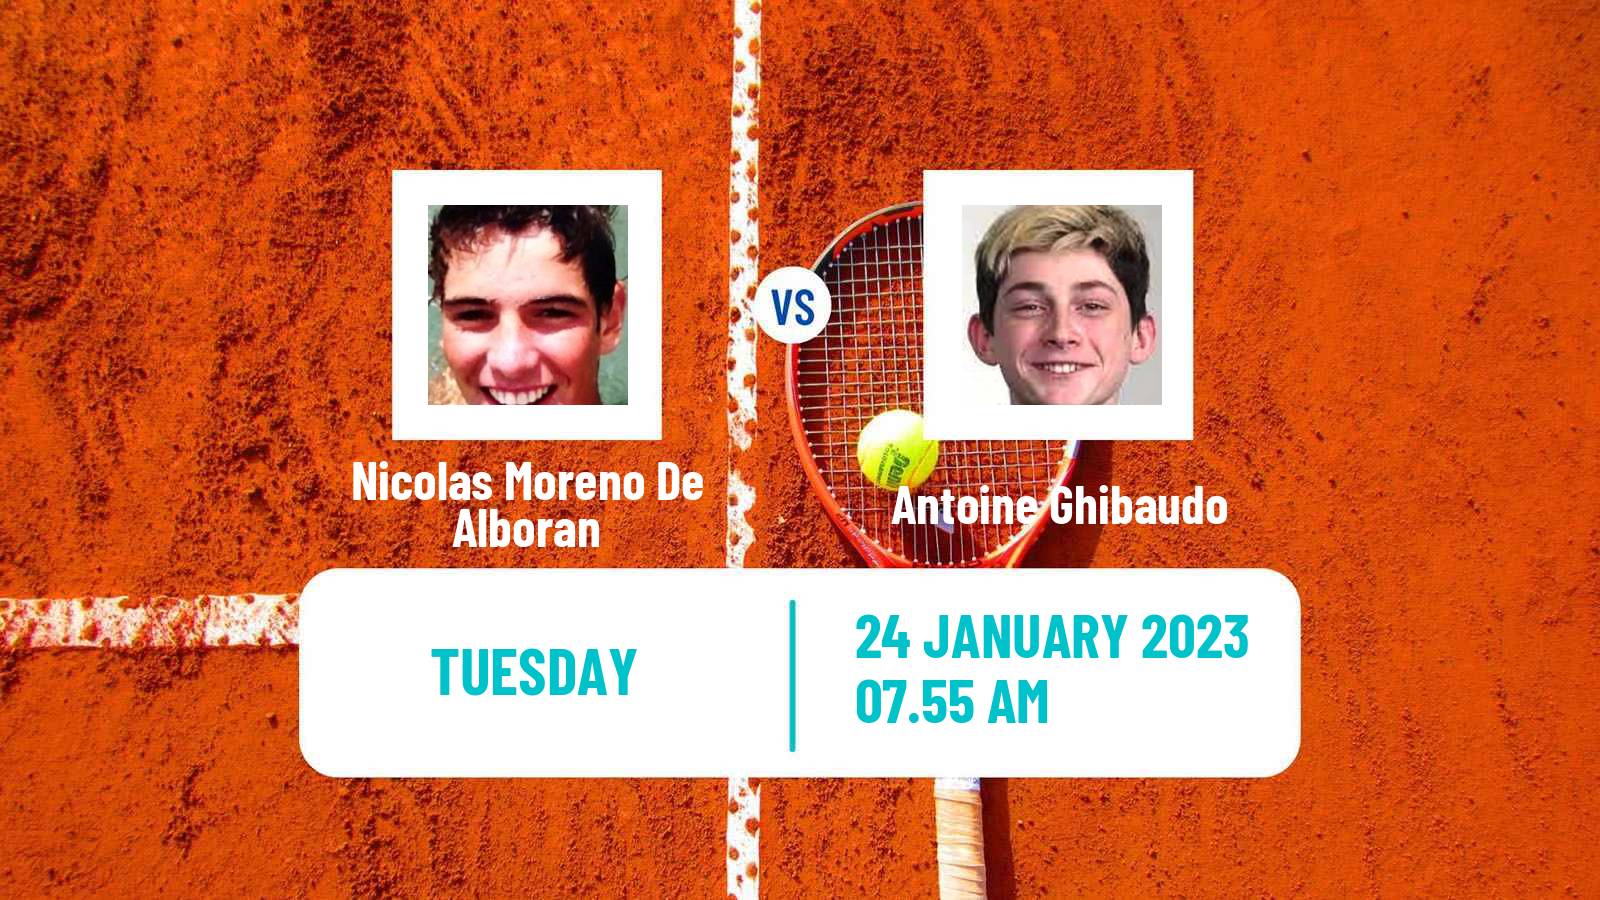 Tennis ATP Challenger Nicolas Moreno De Alboran - Antoine Ghibaudo